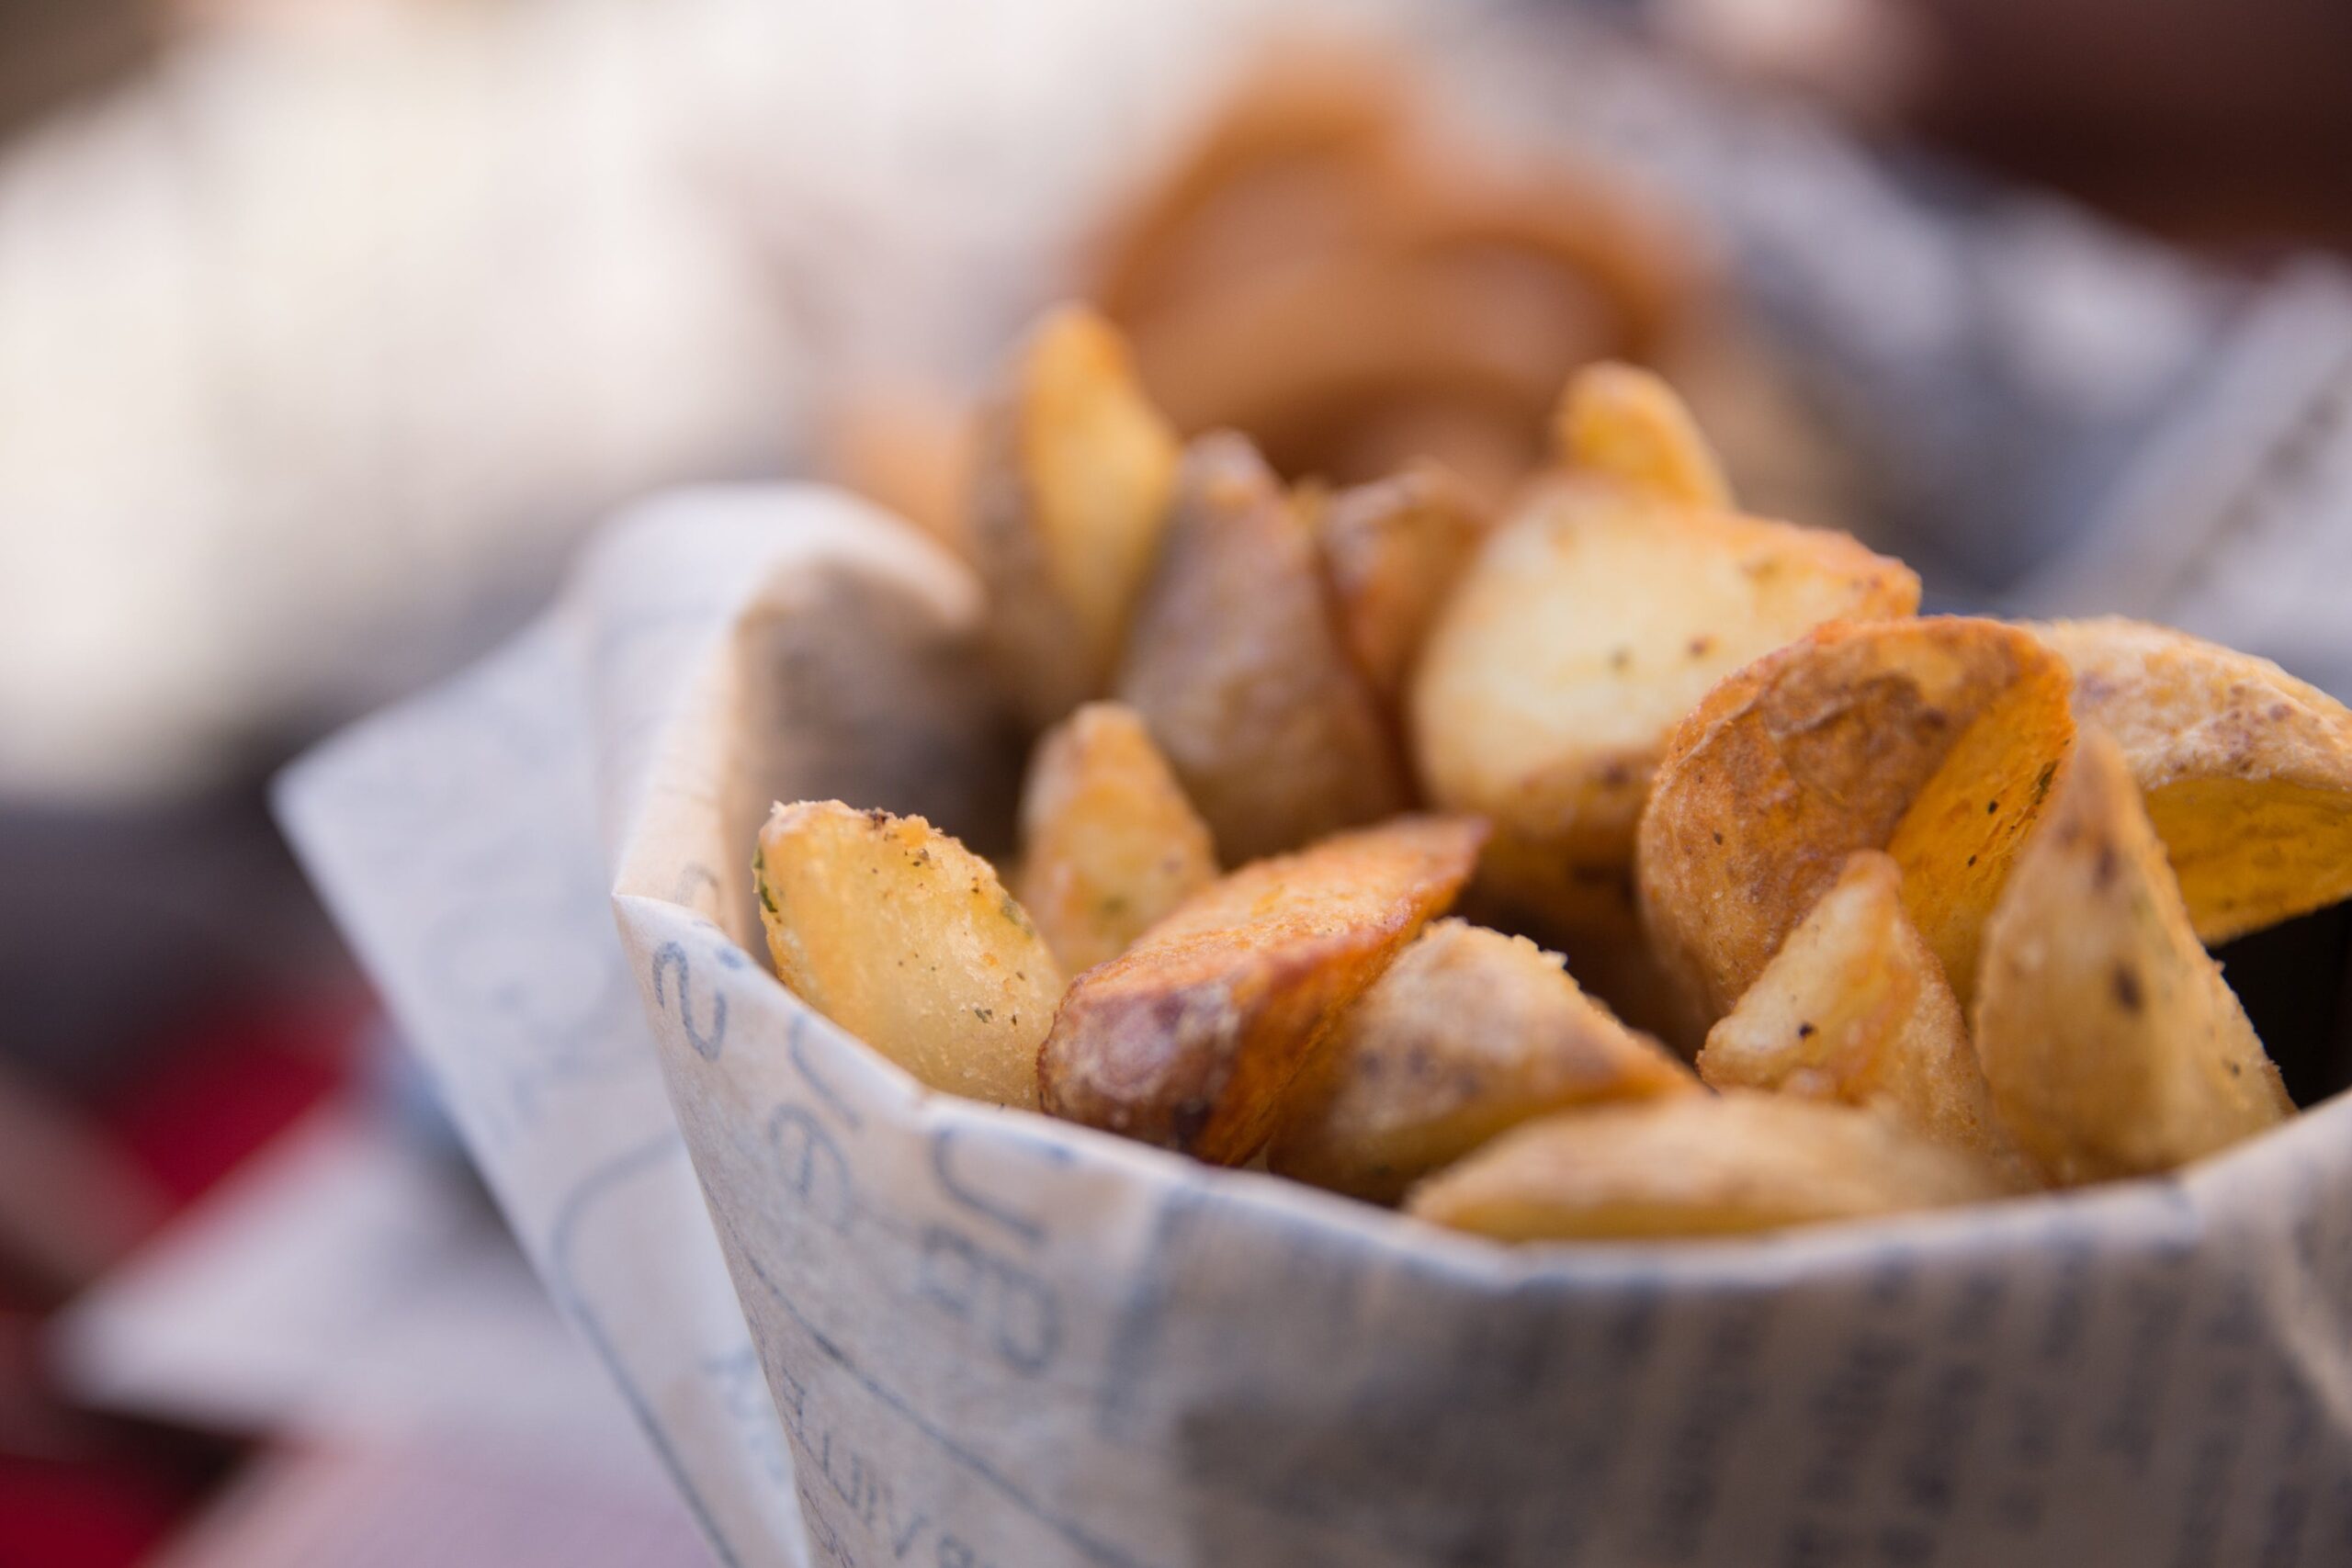 MReza's famous potato chips